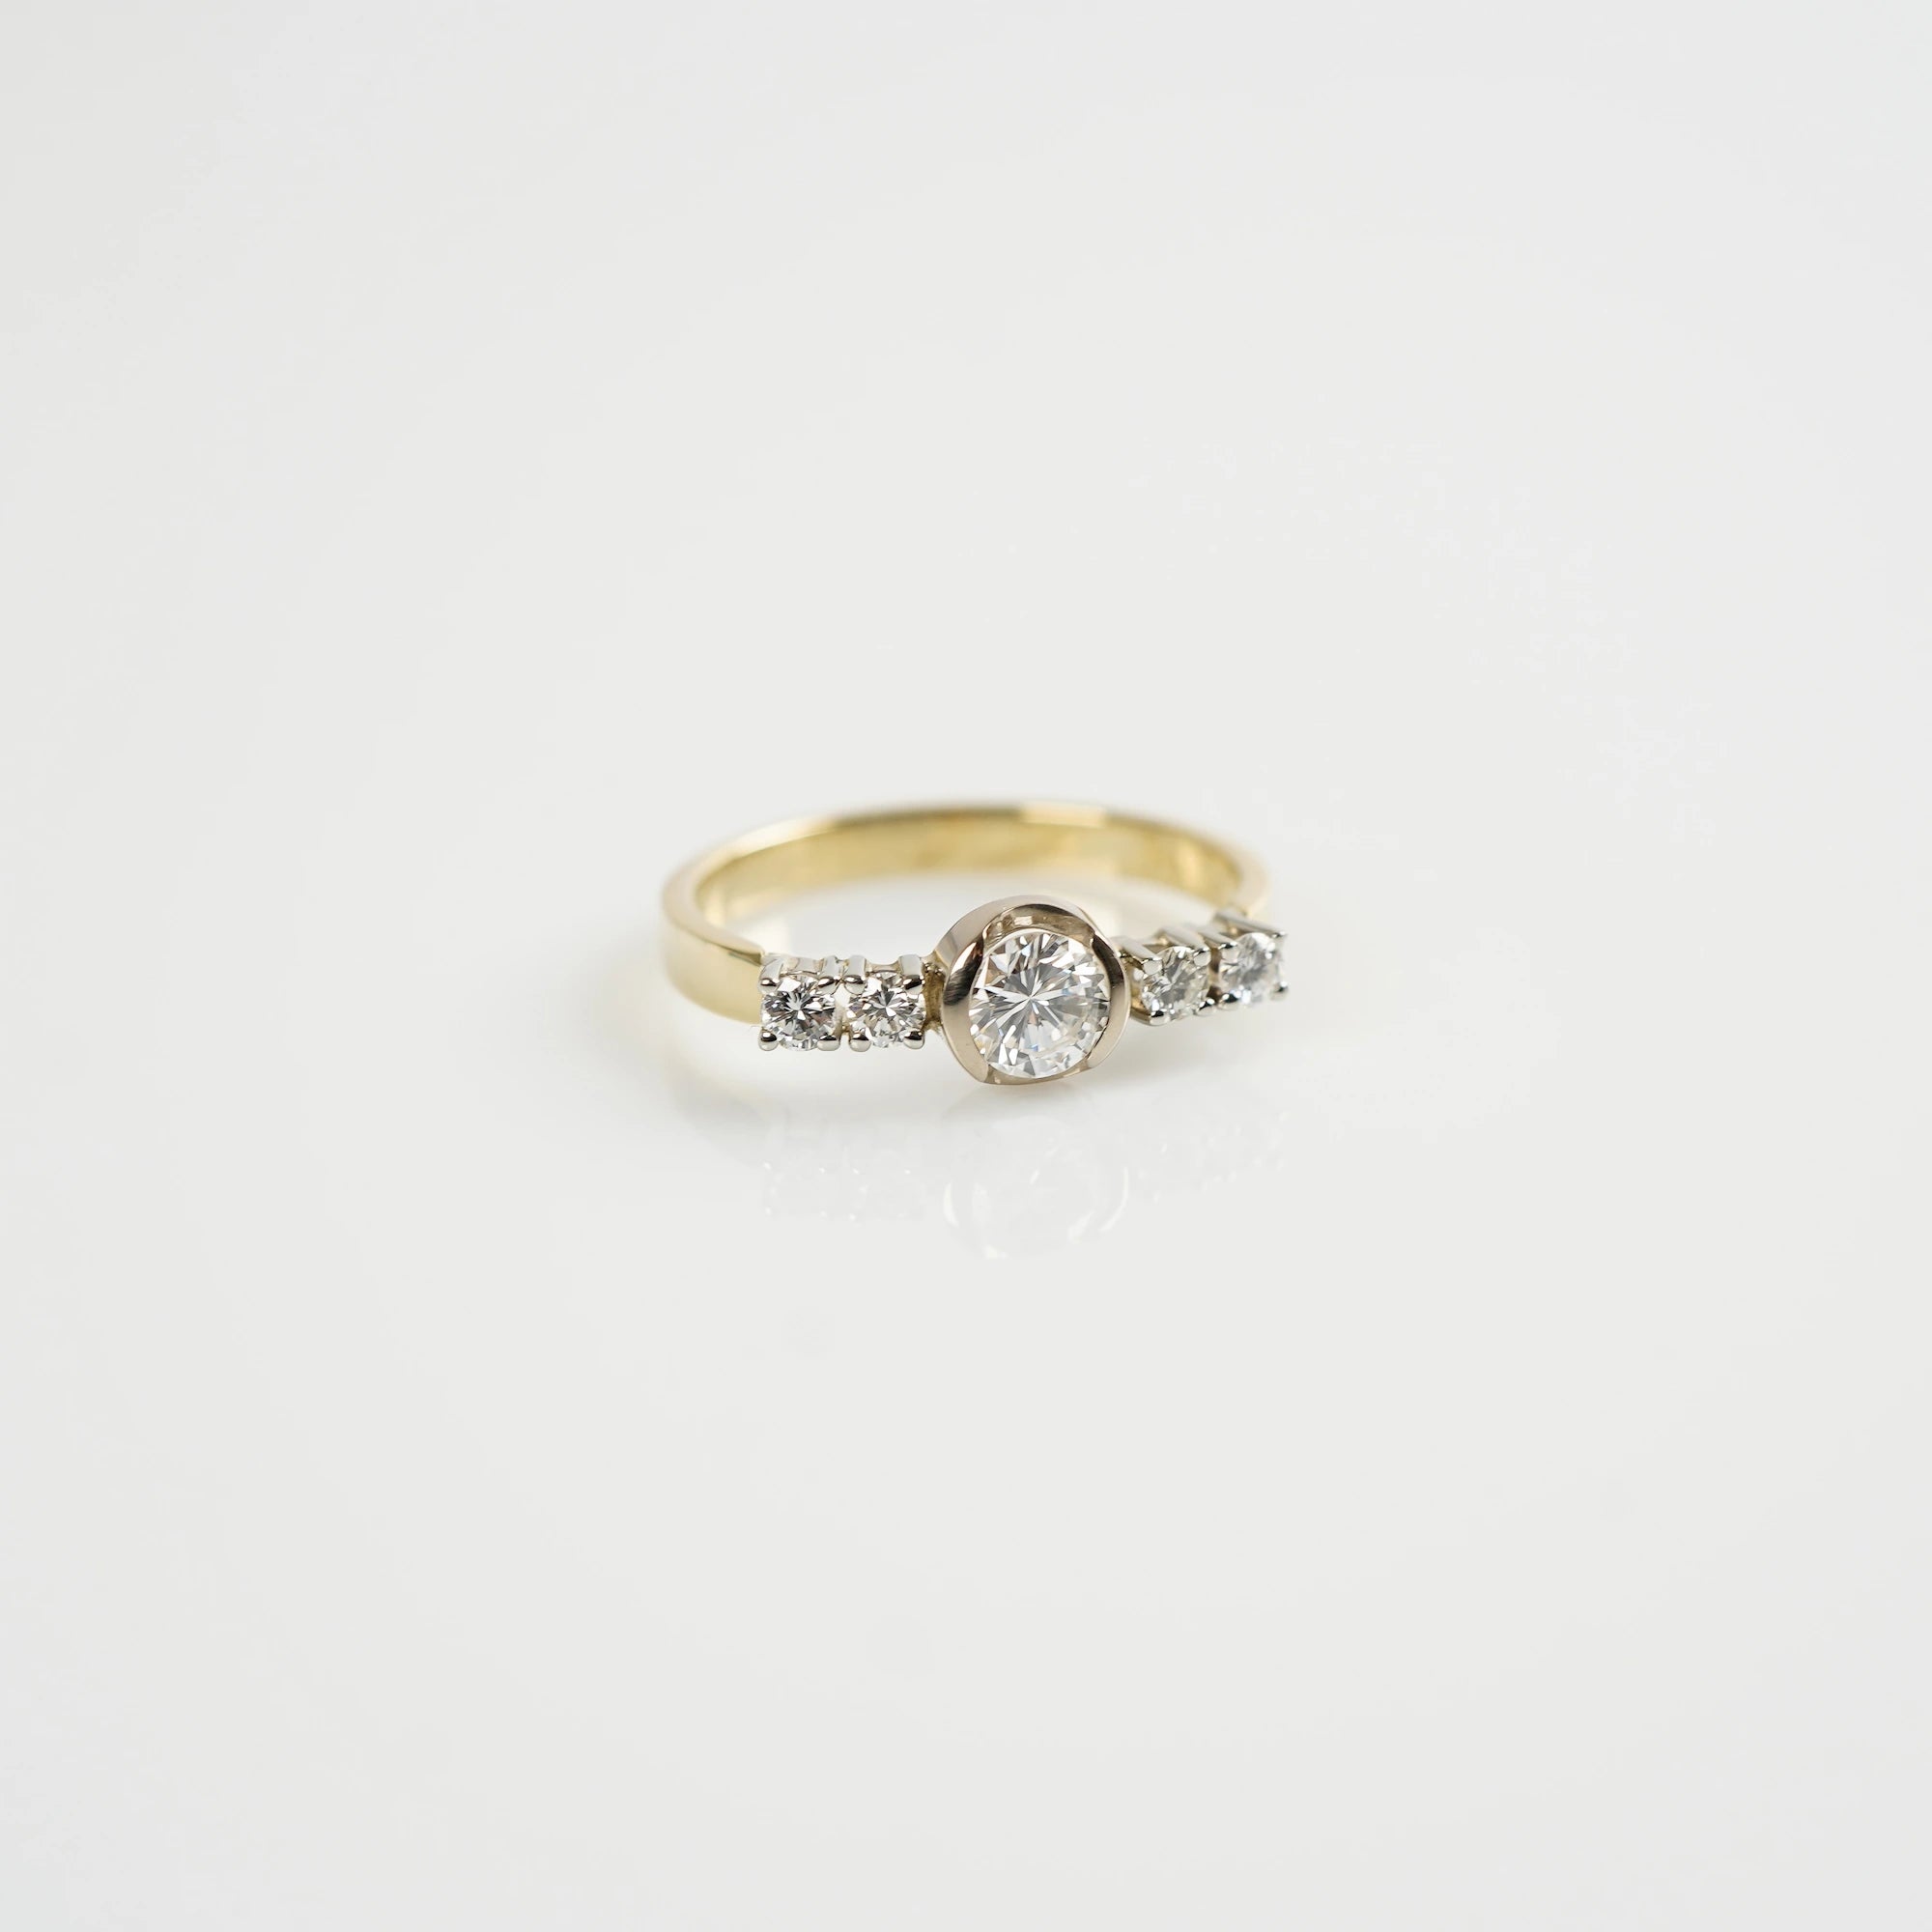 Produktfoto des liegenden, gelbgoldenen Ring mit 5 gefassten Diamanten auf der Ringschiene, wovon der zentrale Stein der Größte ist